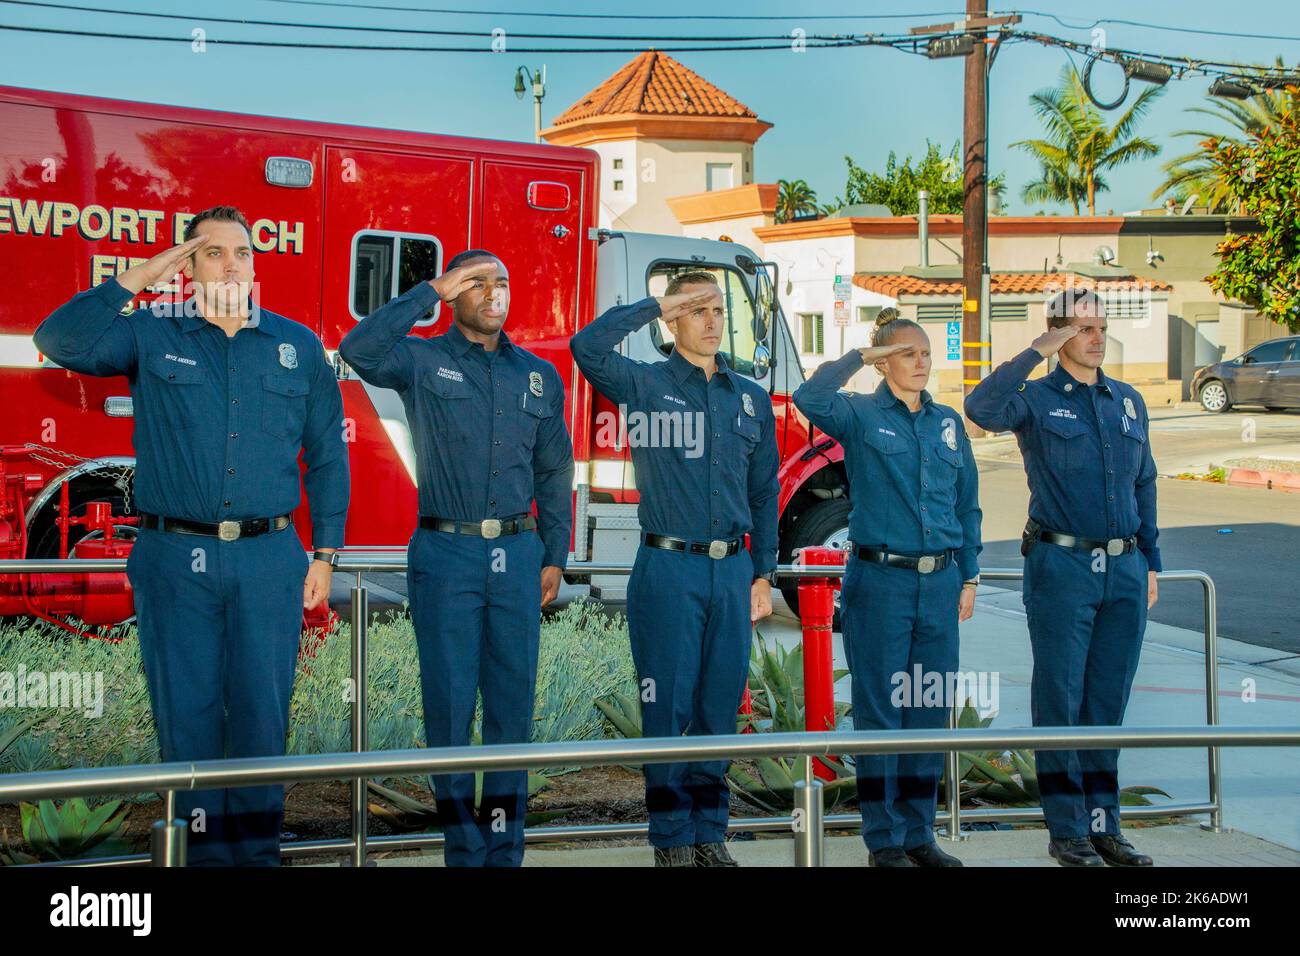 Am 20.. Jahrestag von 9/11 grüßen Feuerwehrleute in Newport Beach, CA, während sie eine Sendung der Orange County Fire Authority in rem hören Stockfoto